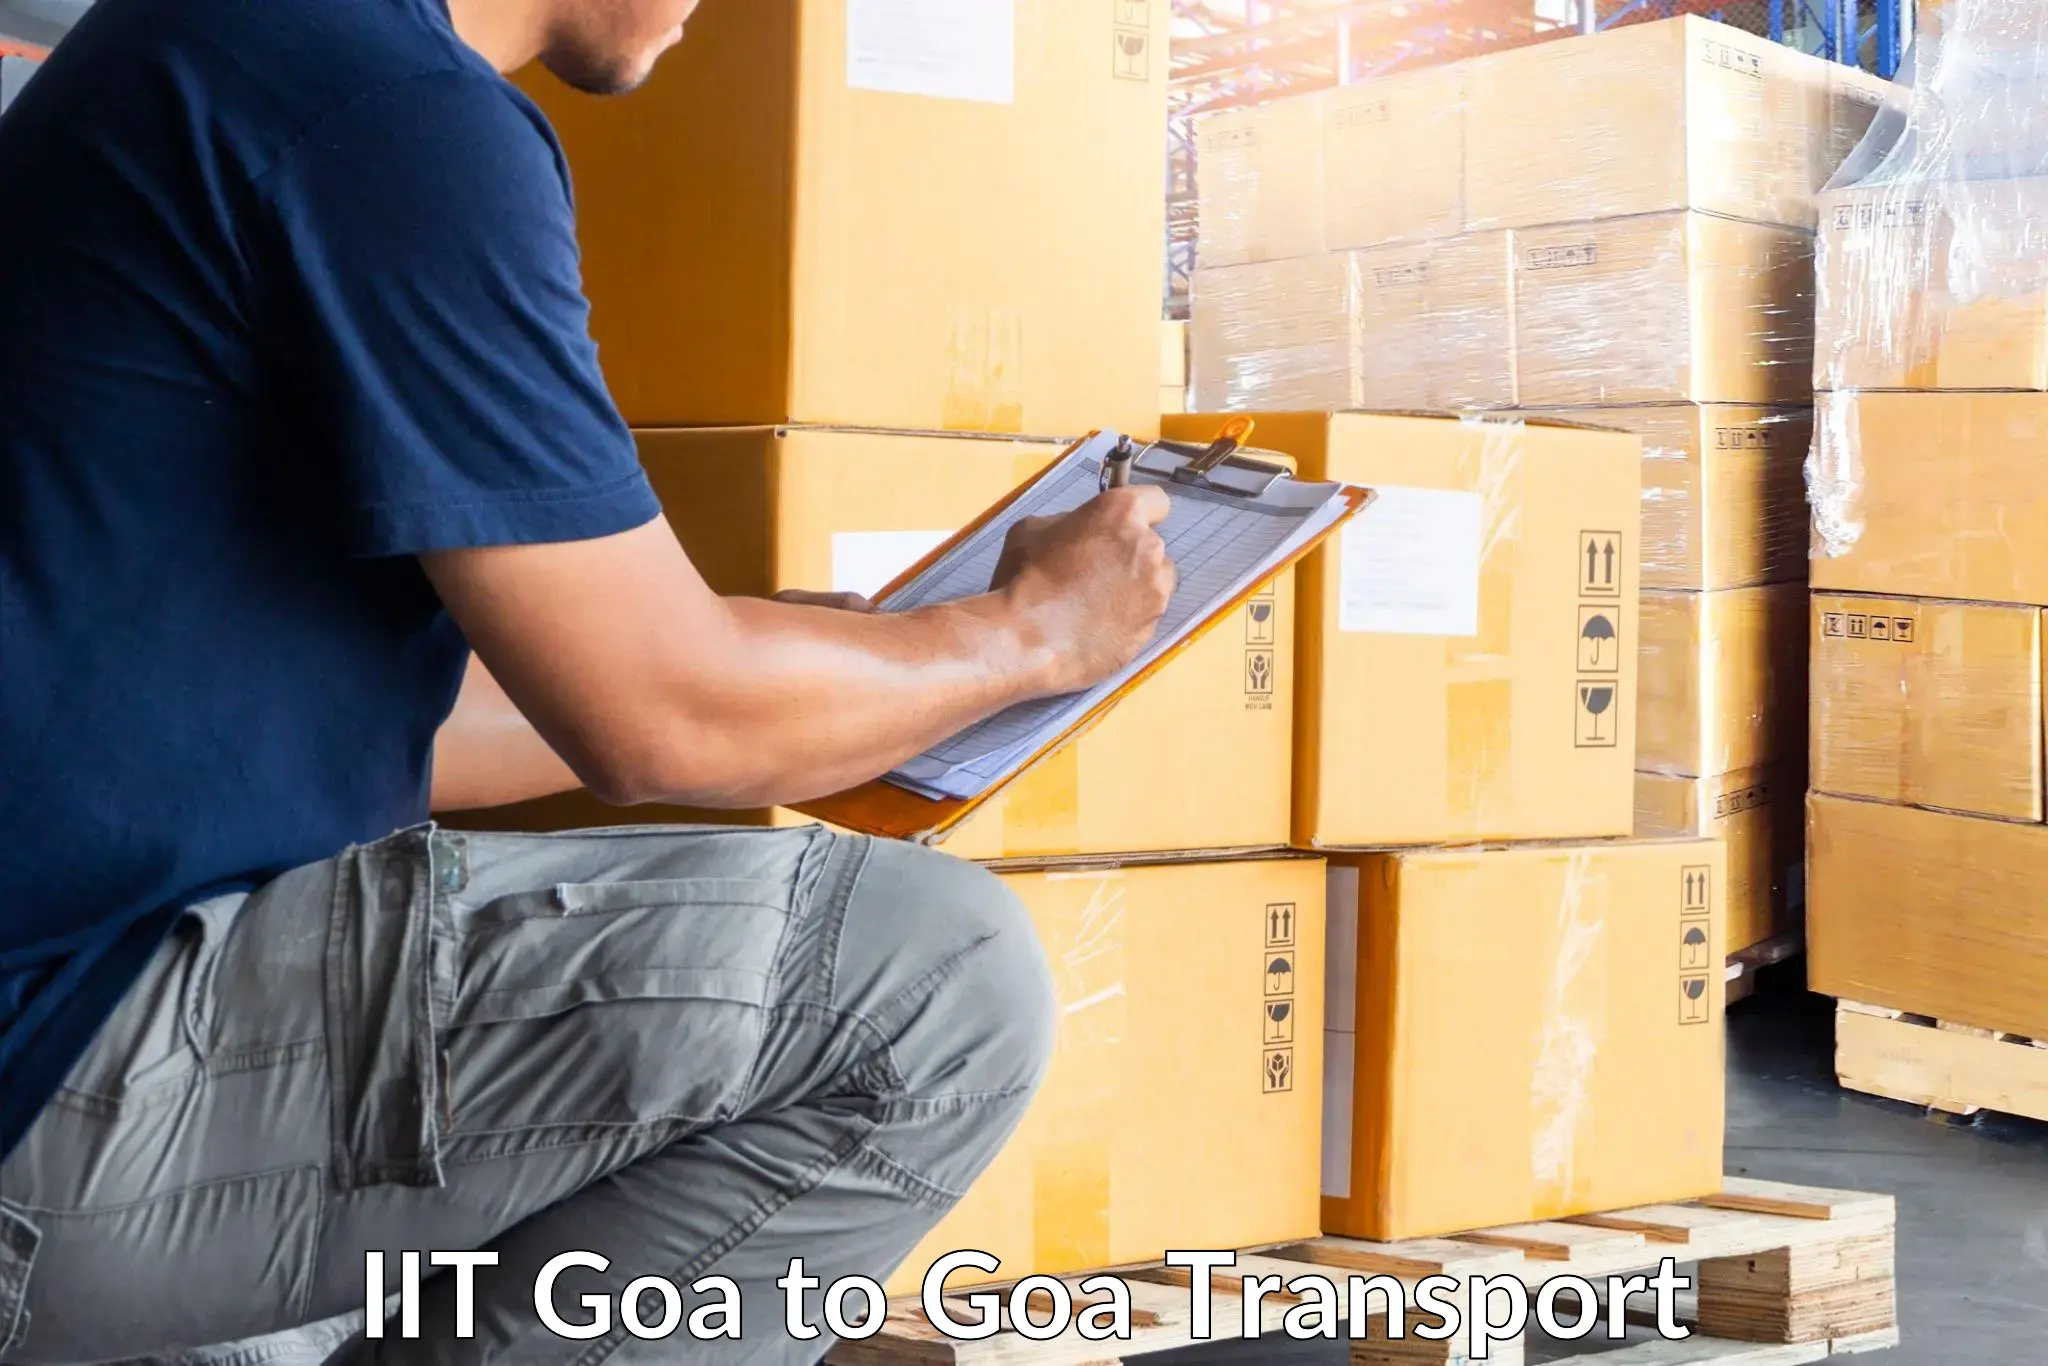 Delivery service IIT Goa to IIT Goa